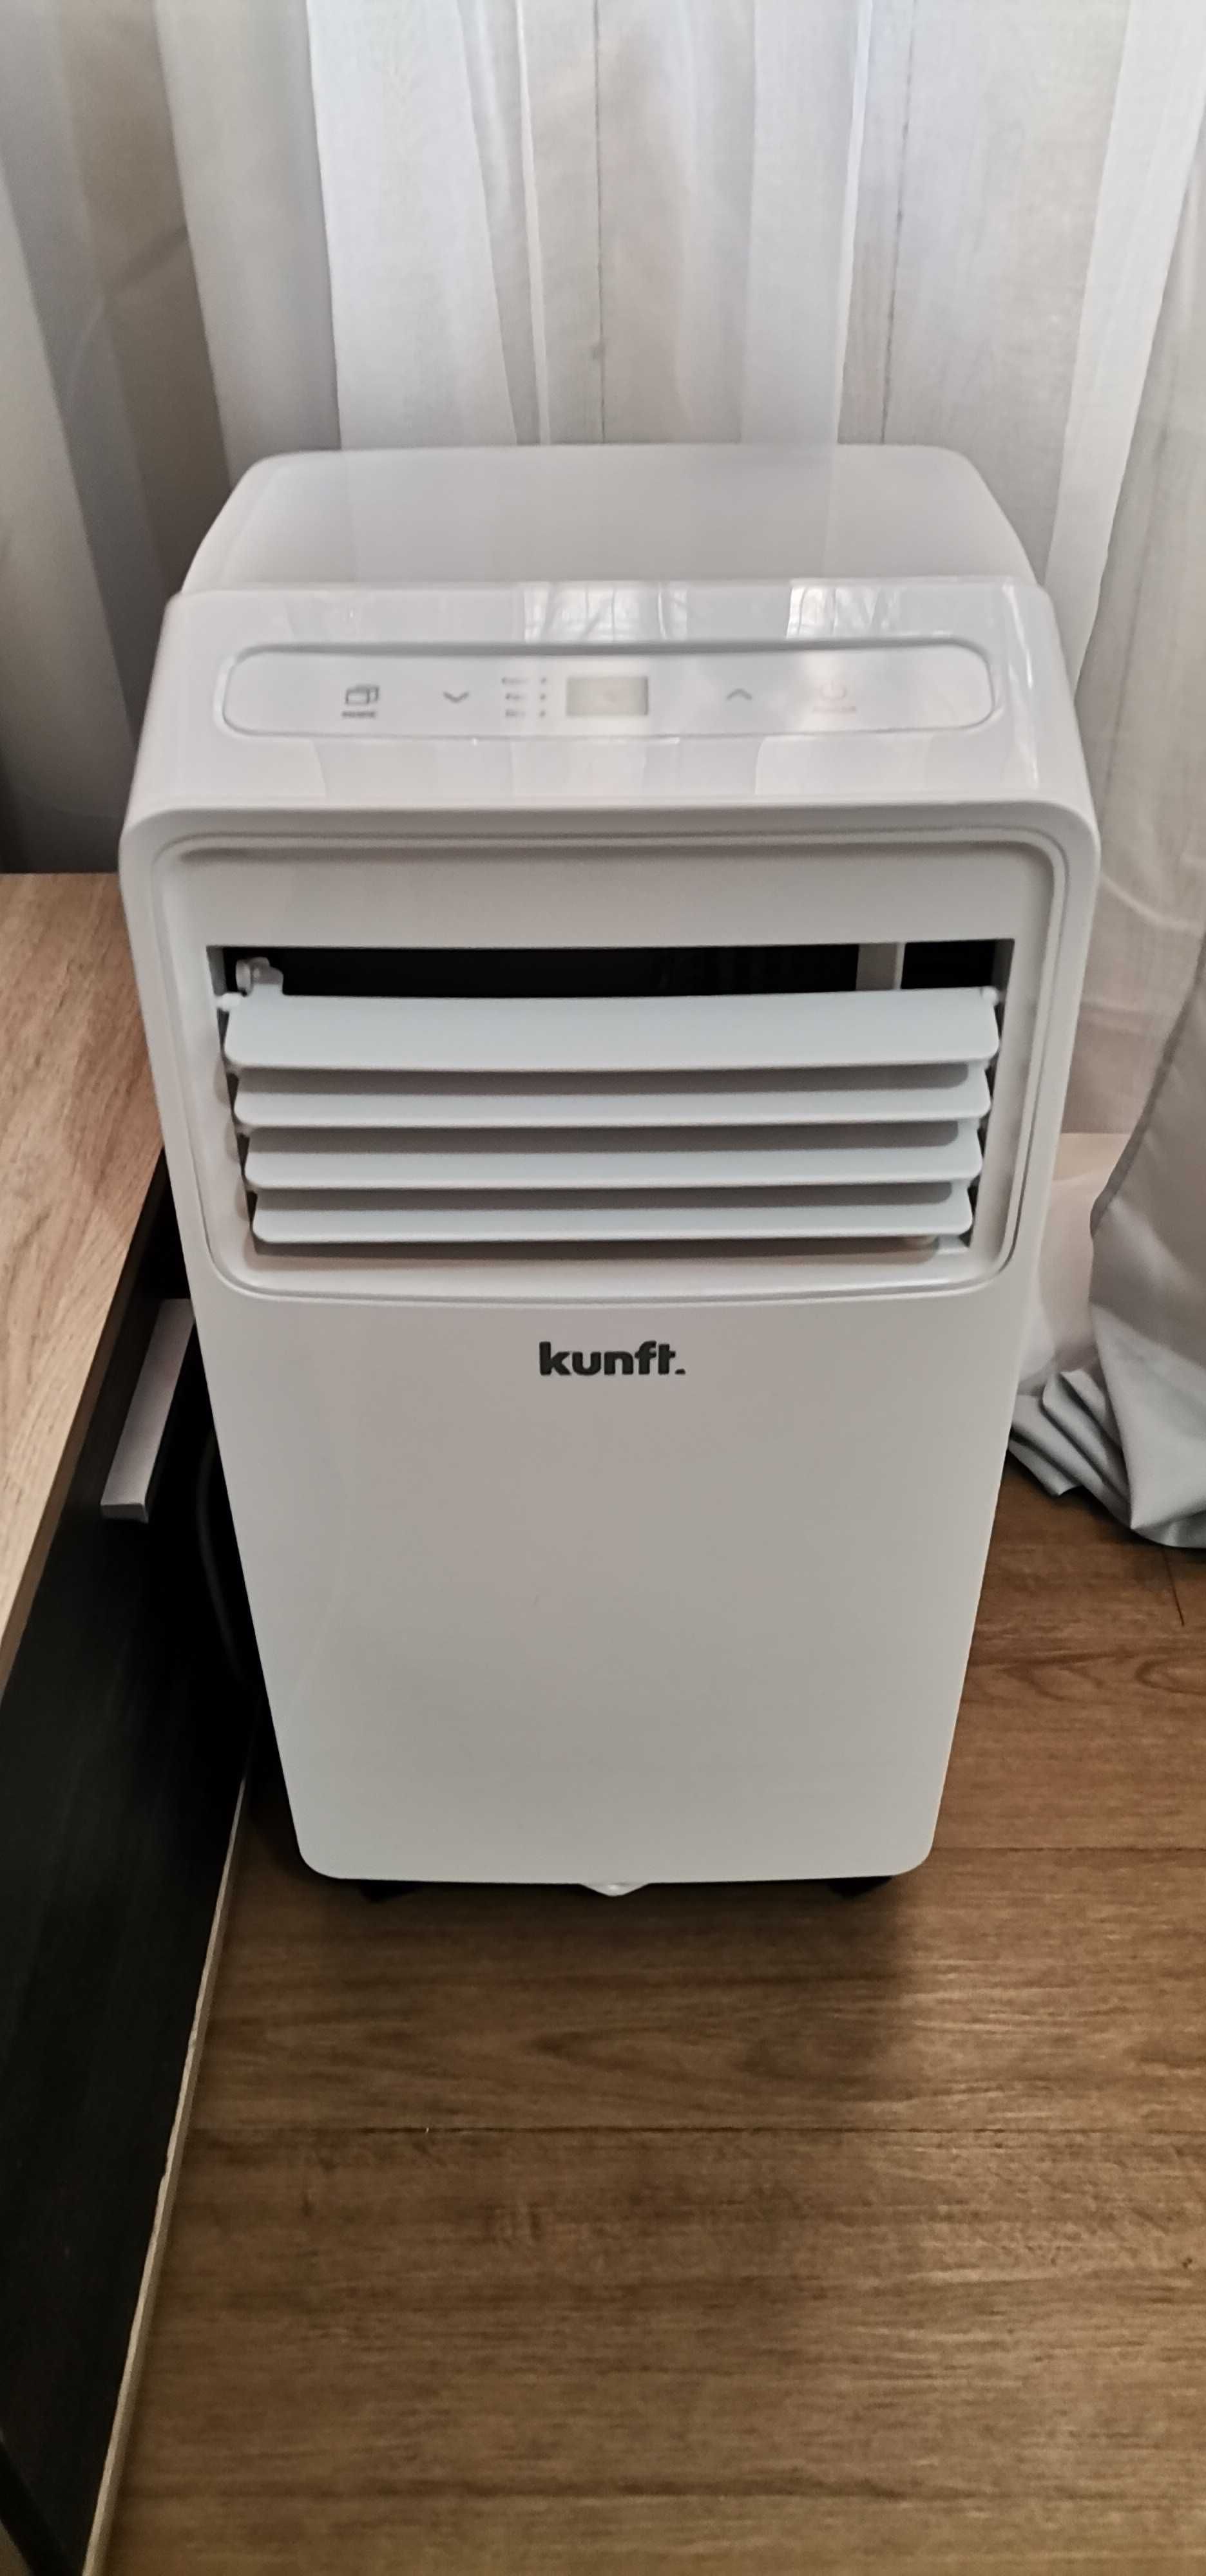 Ar condicionado / Desumidificador portátil kunft, como novo